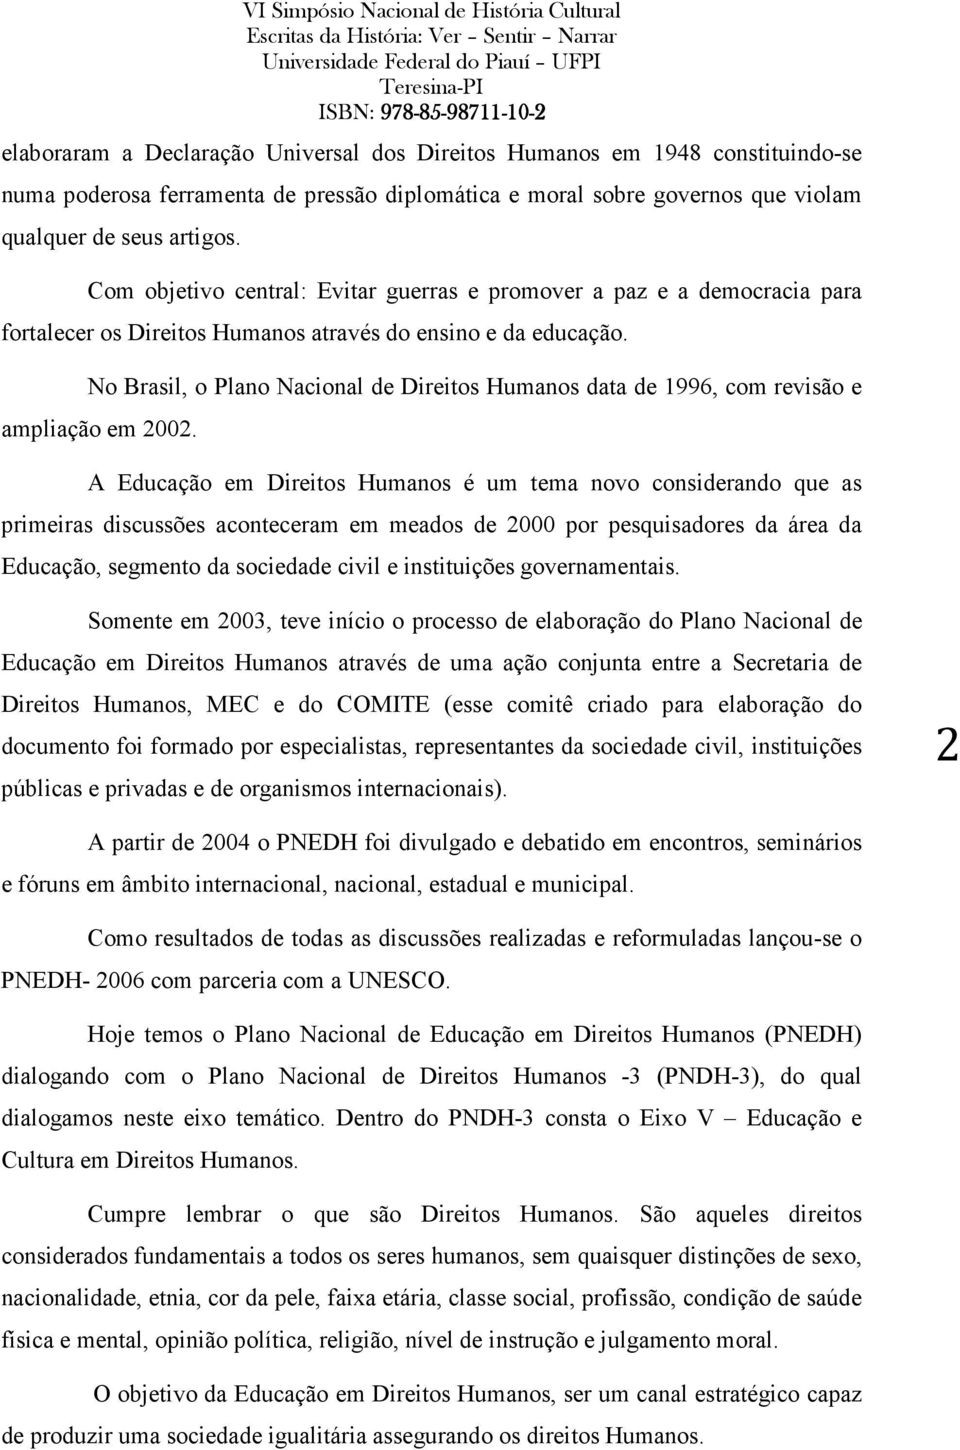 No Brasil, o Plano Nacional de Direitos Humanos data de 1996, com revisão e ampliação em 2002.